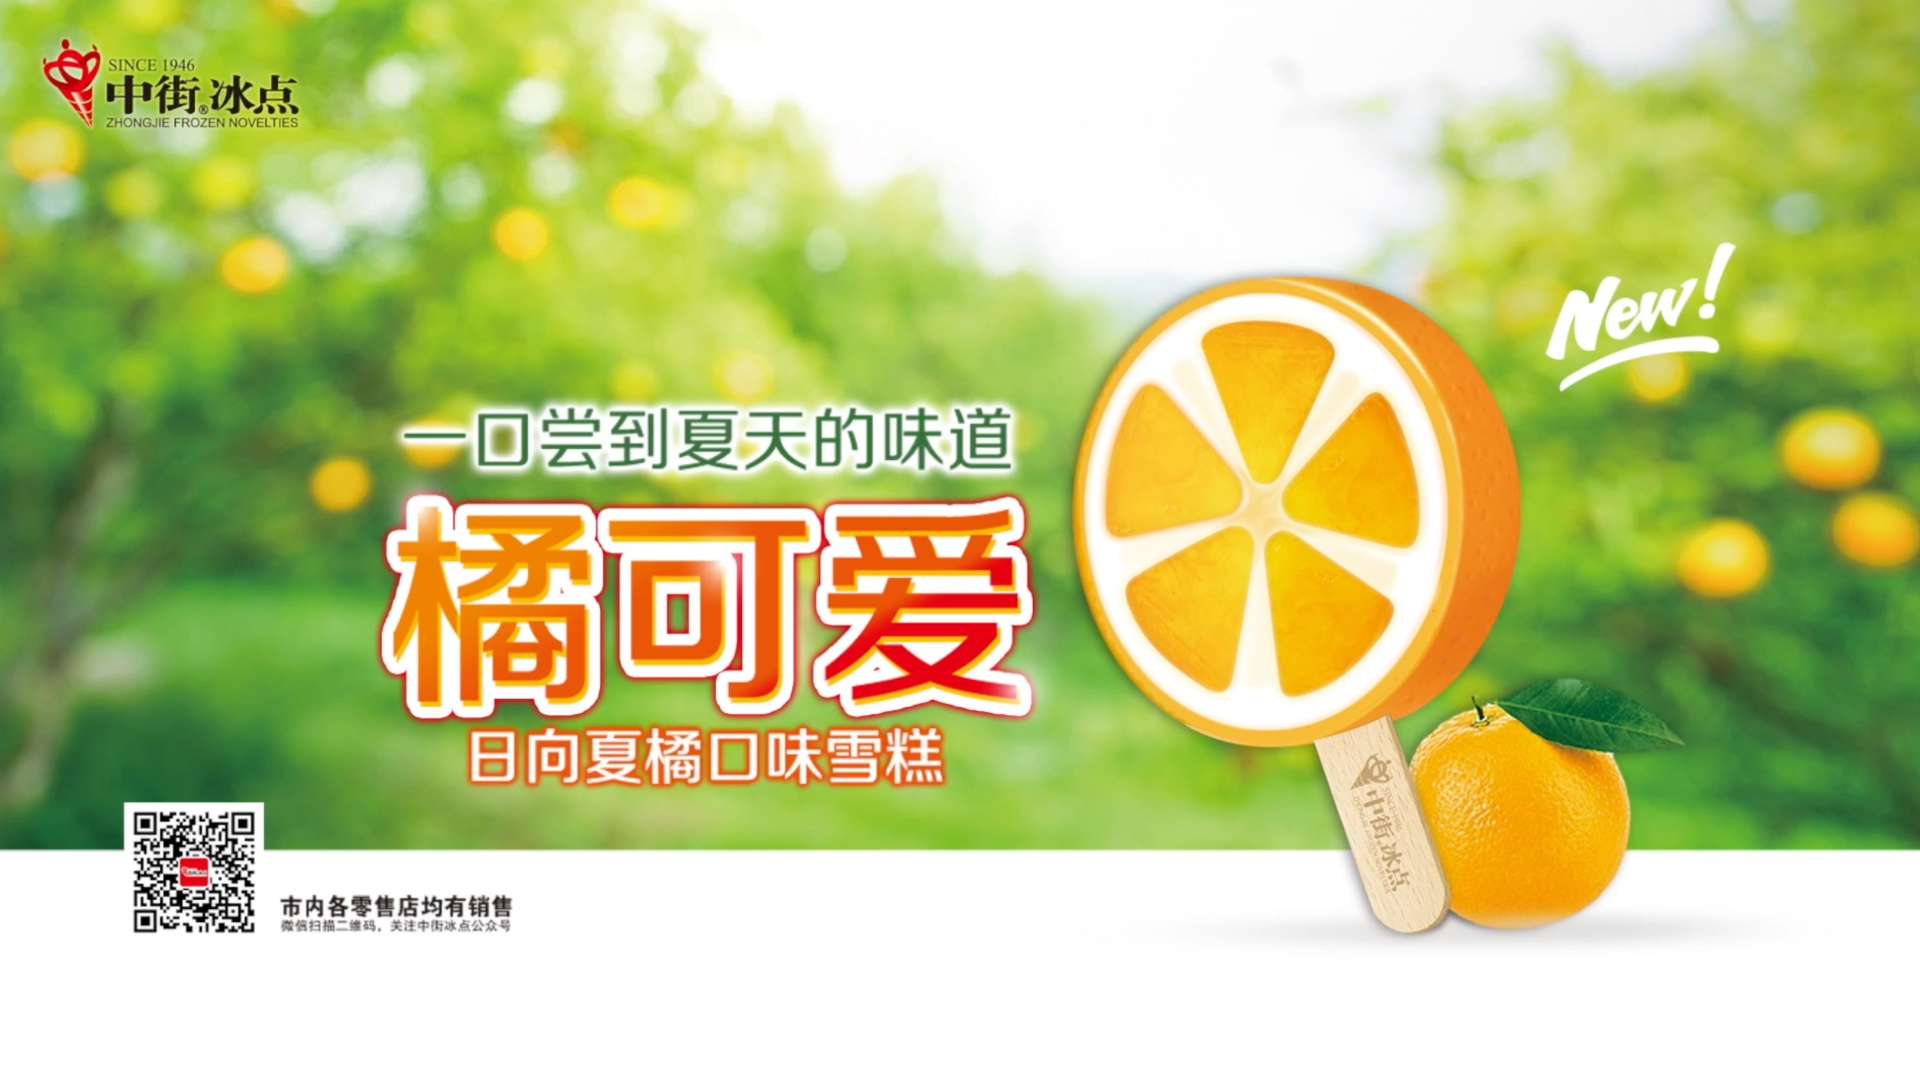 中街冰点橘可爱 冷饮广告